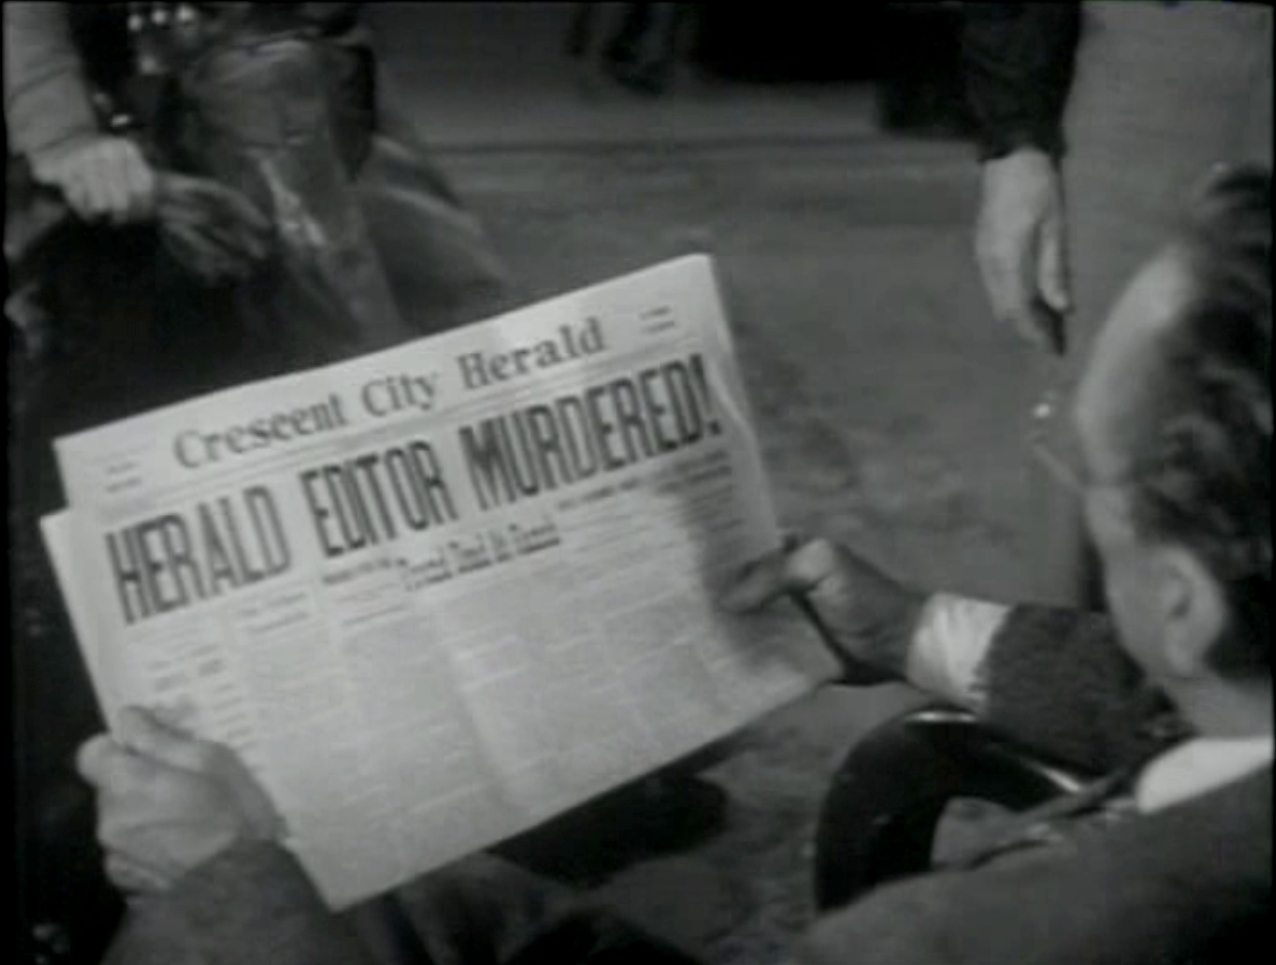 Zorro's Black Whip (1944)